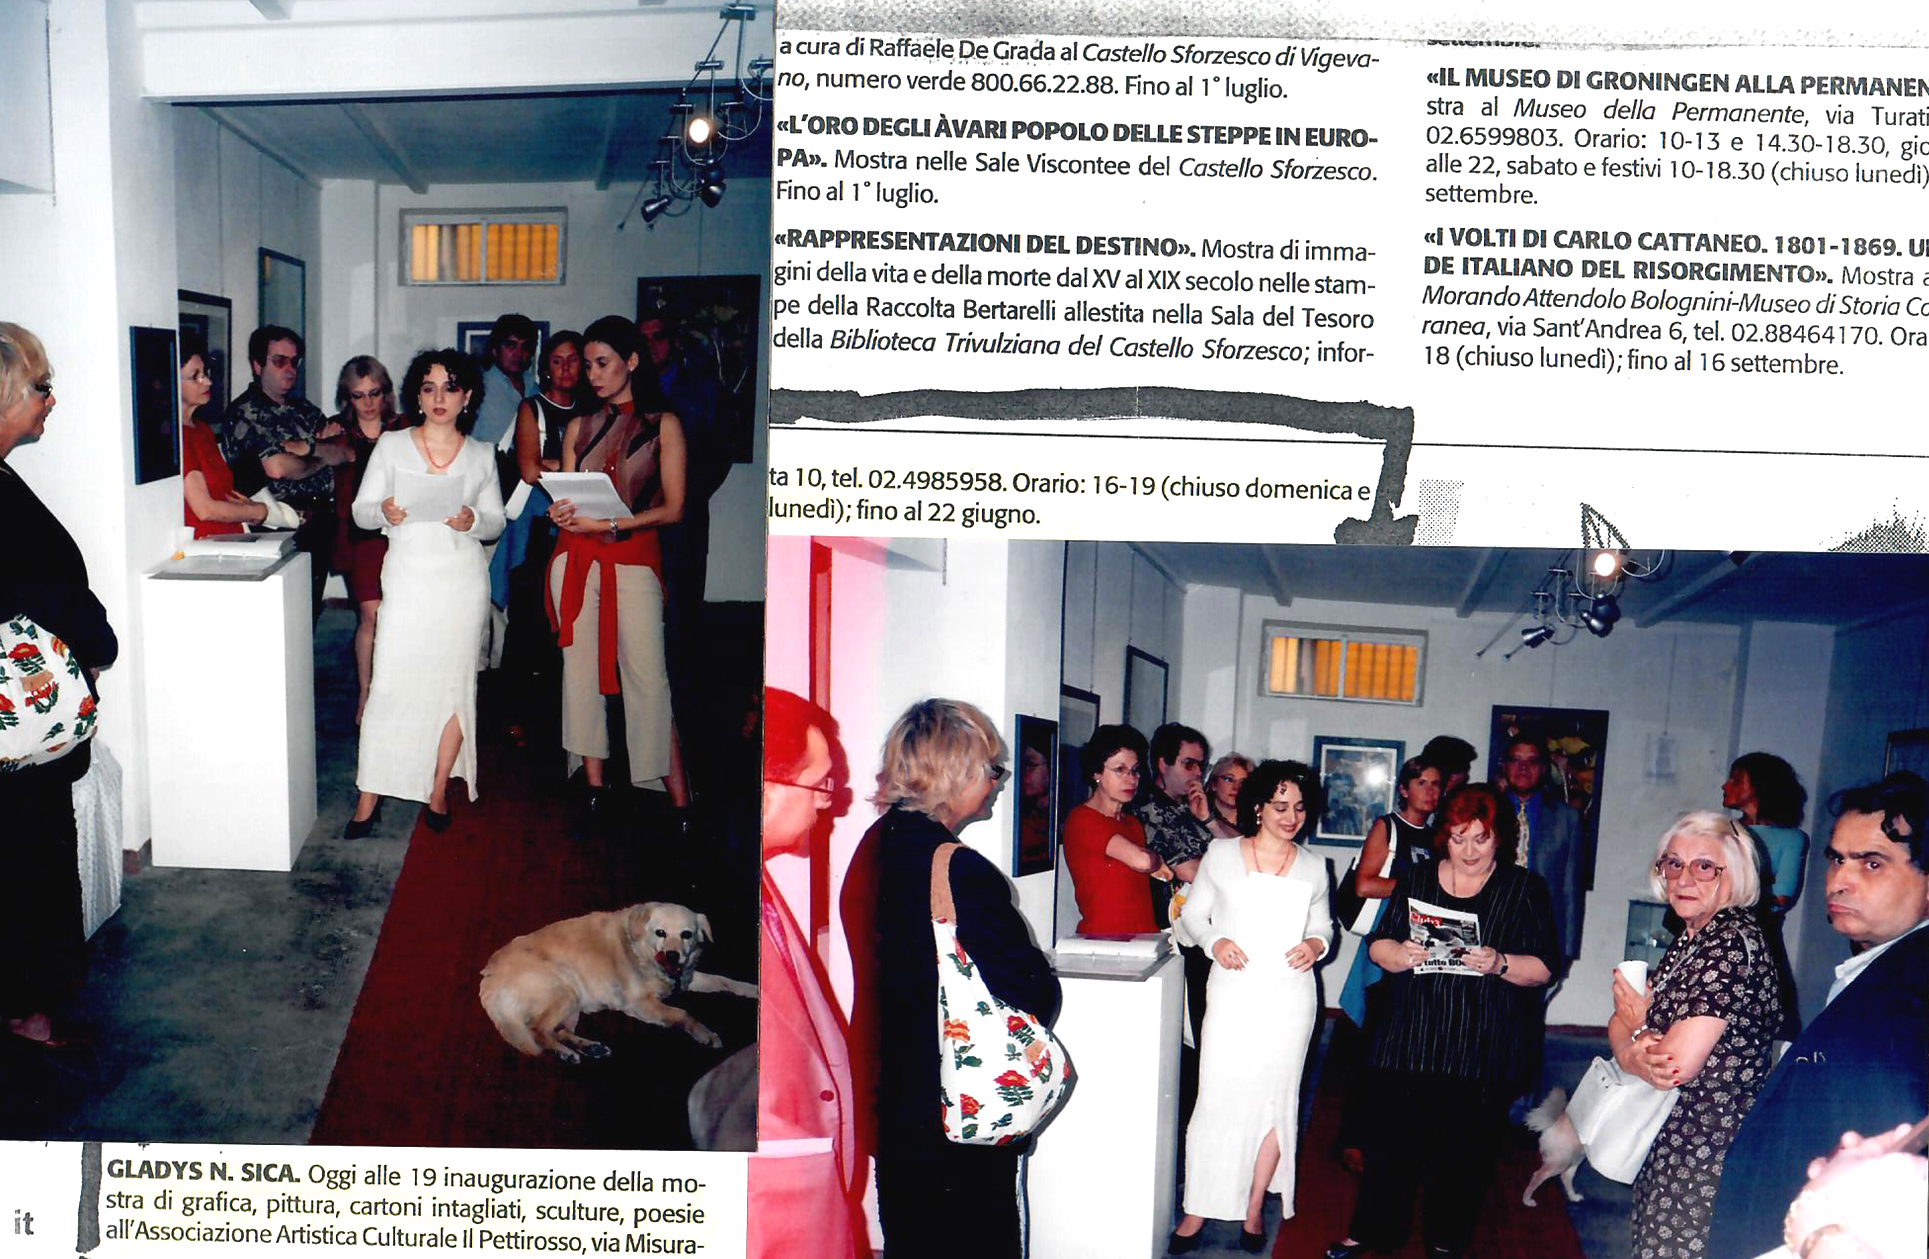 2001 - Personale 'Dall' Argentina', Assoc. Il Pettirosso, notizia su 'Il Giornale' Milano. Nella foto in alto con Sarah Manzoli e in basso, a dx, l'artista Tano Santoro.